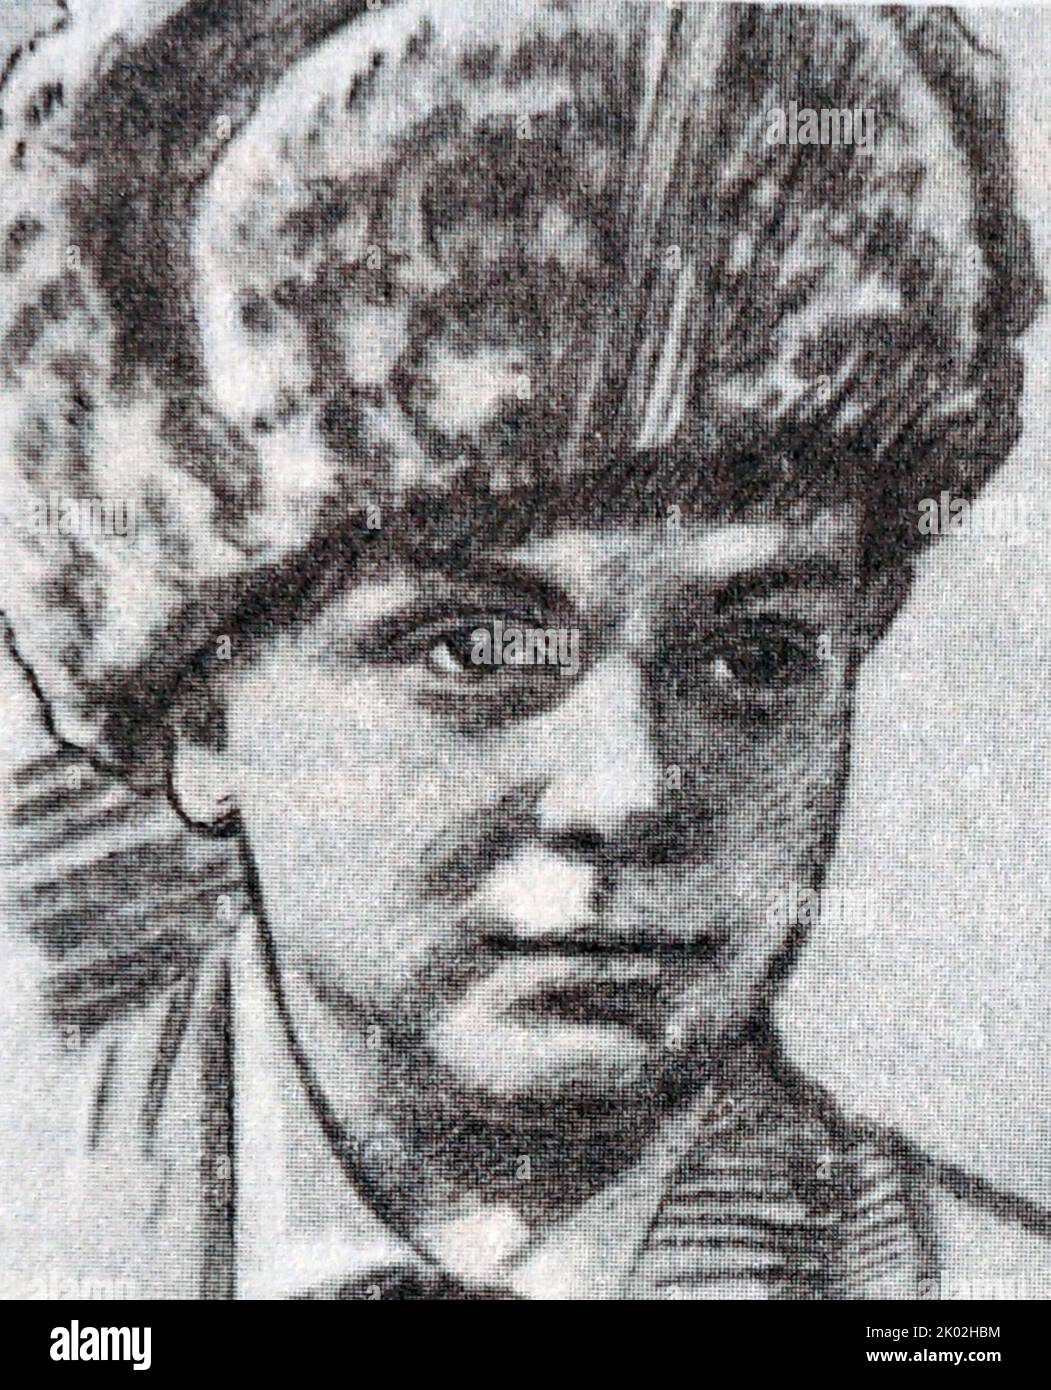 Pionierheld der Sowjetunion während des Großen Vaterländischen Krieges, (2. Weltkrieg): Lenja Golikow Stockfoto